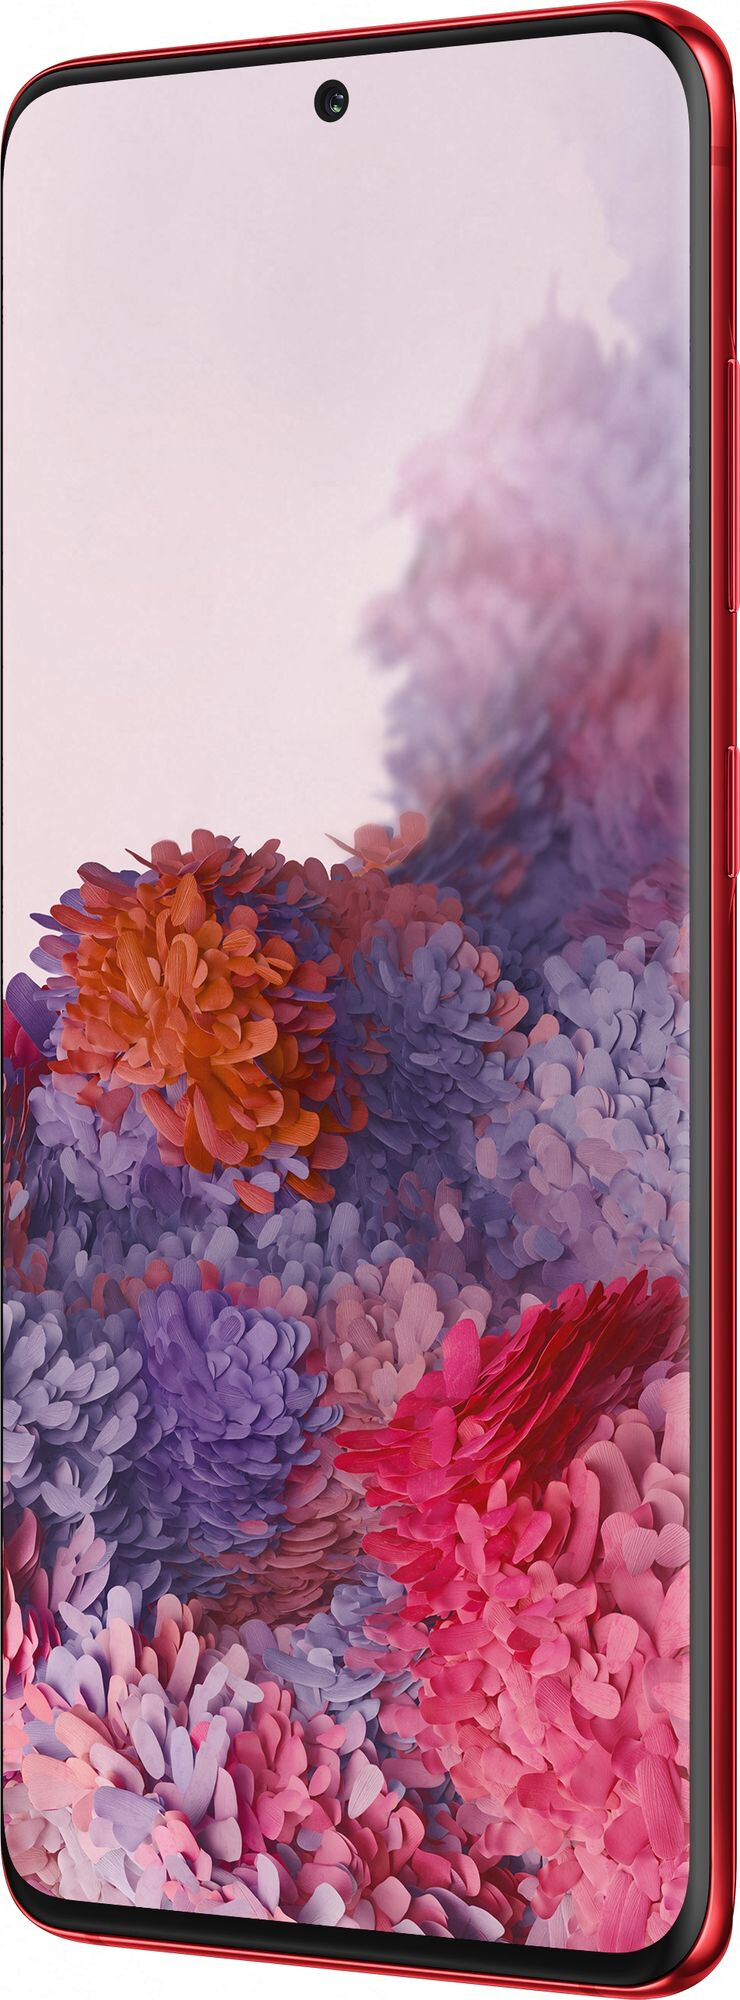 Смартфон Samsung Galaxy S20 (SM-G9810) (Snapdragon) 8/128GB Red (Красный)